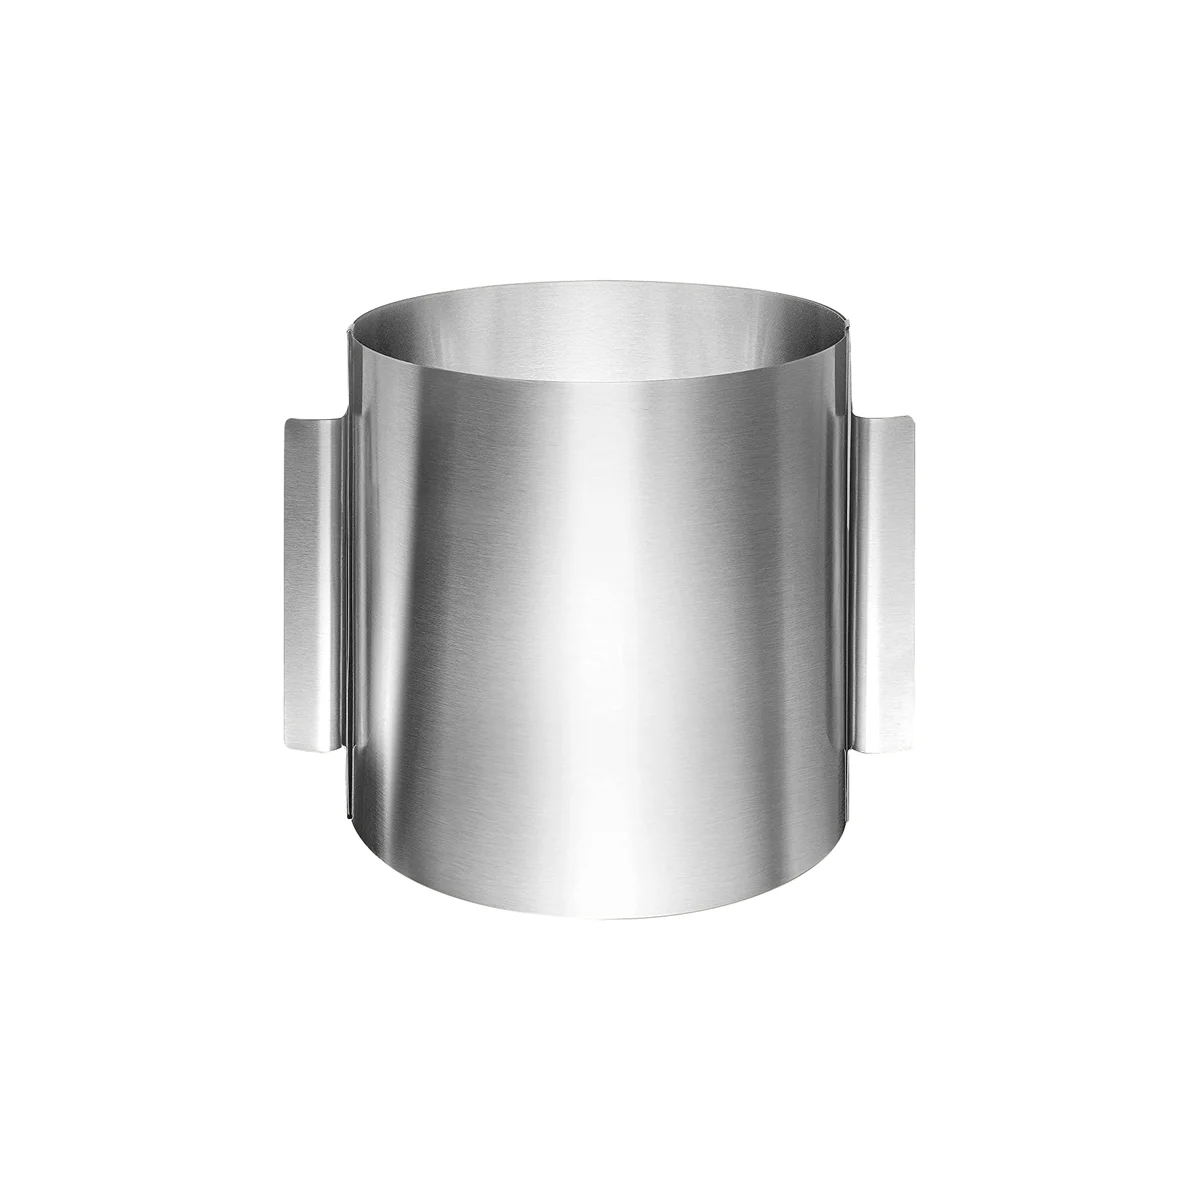 

Регулируемое кольцо для выпечки, высота 20 см, кольцо для выпечки из нержавеющей стали, регулируемое, высокая форма для выпечки для легкой подготовки